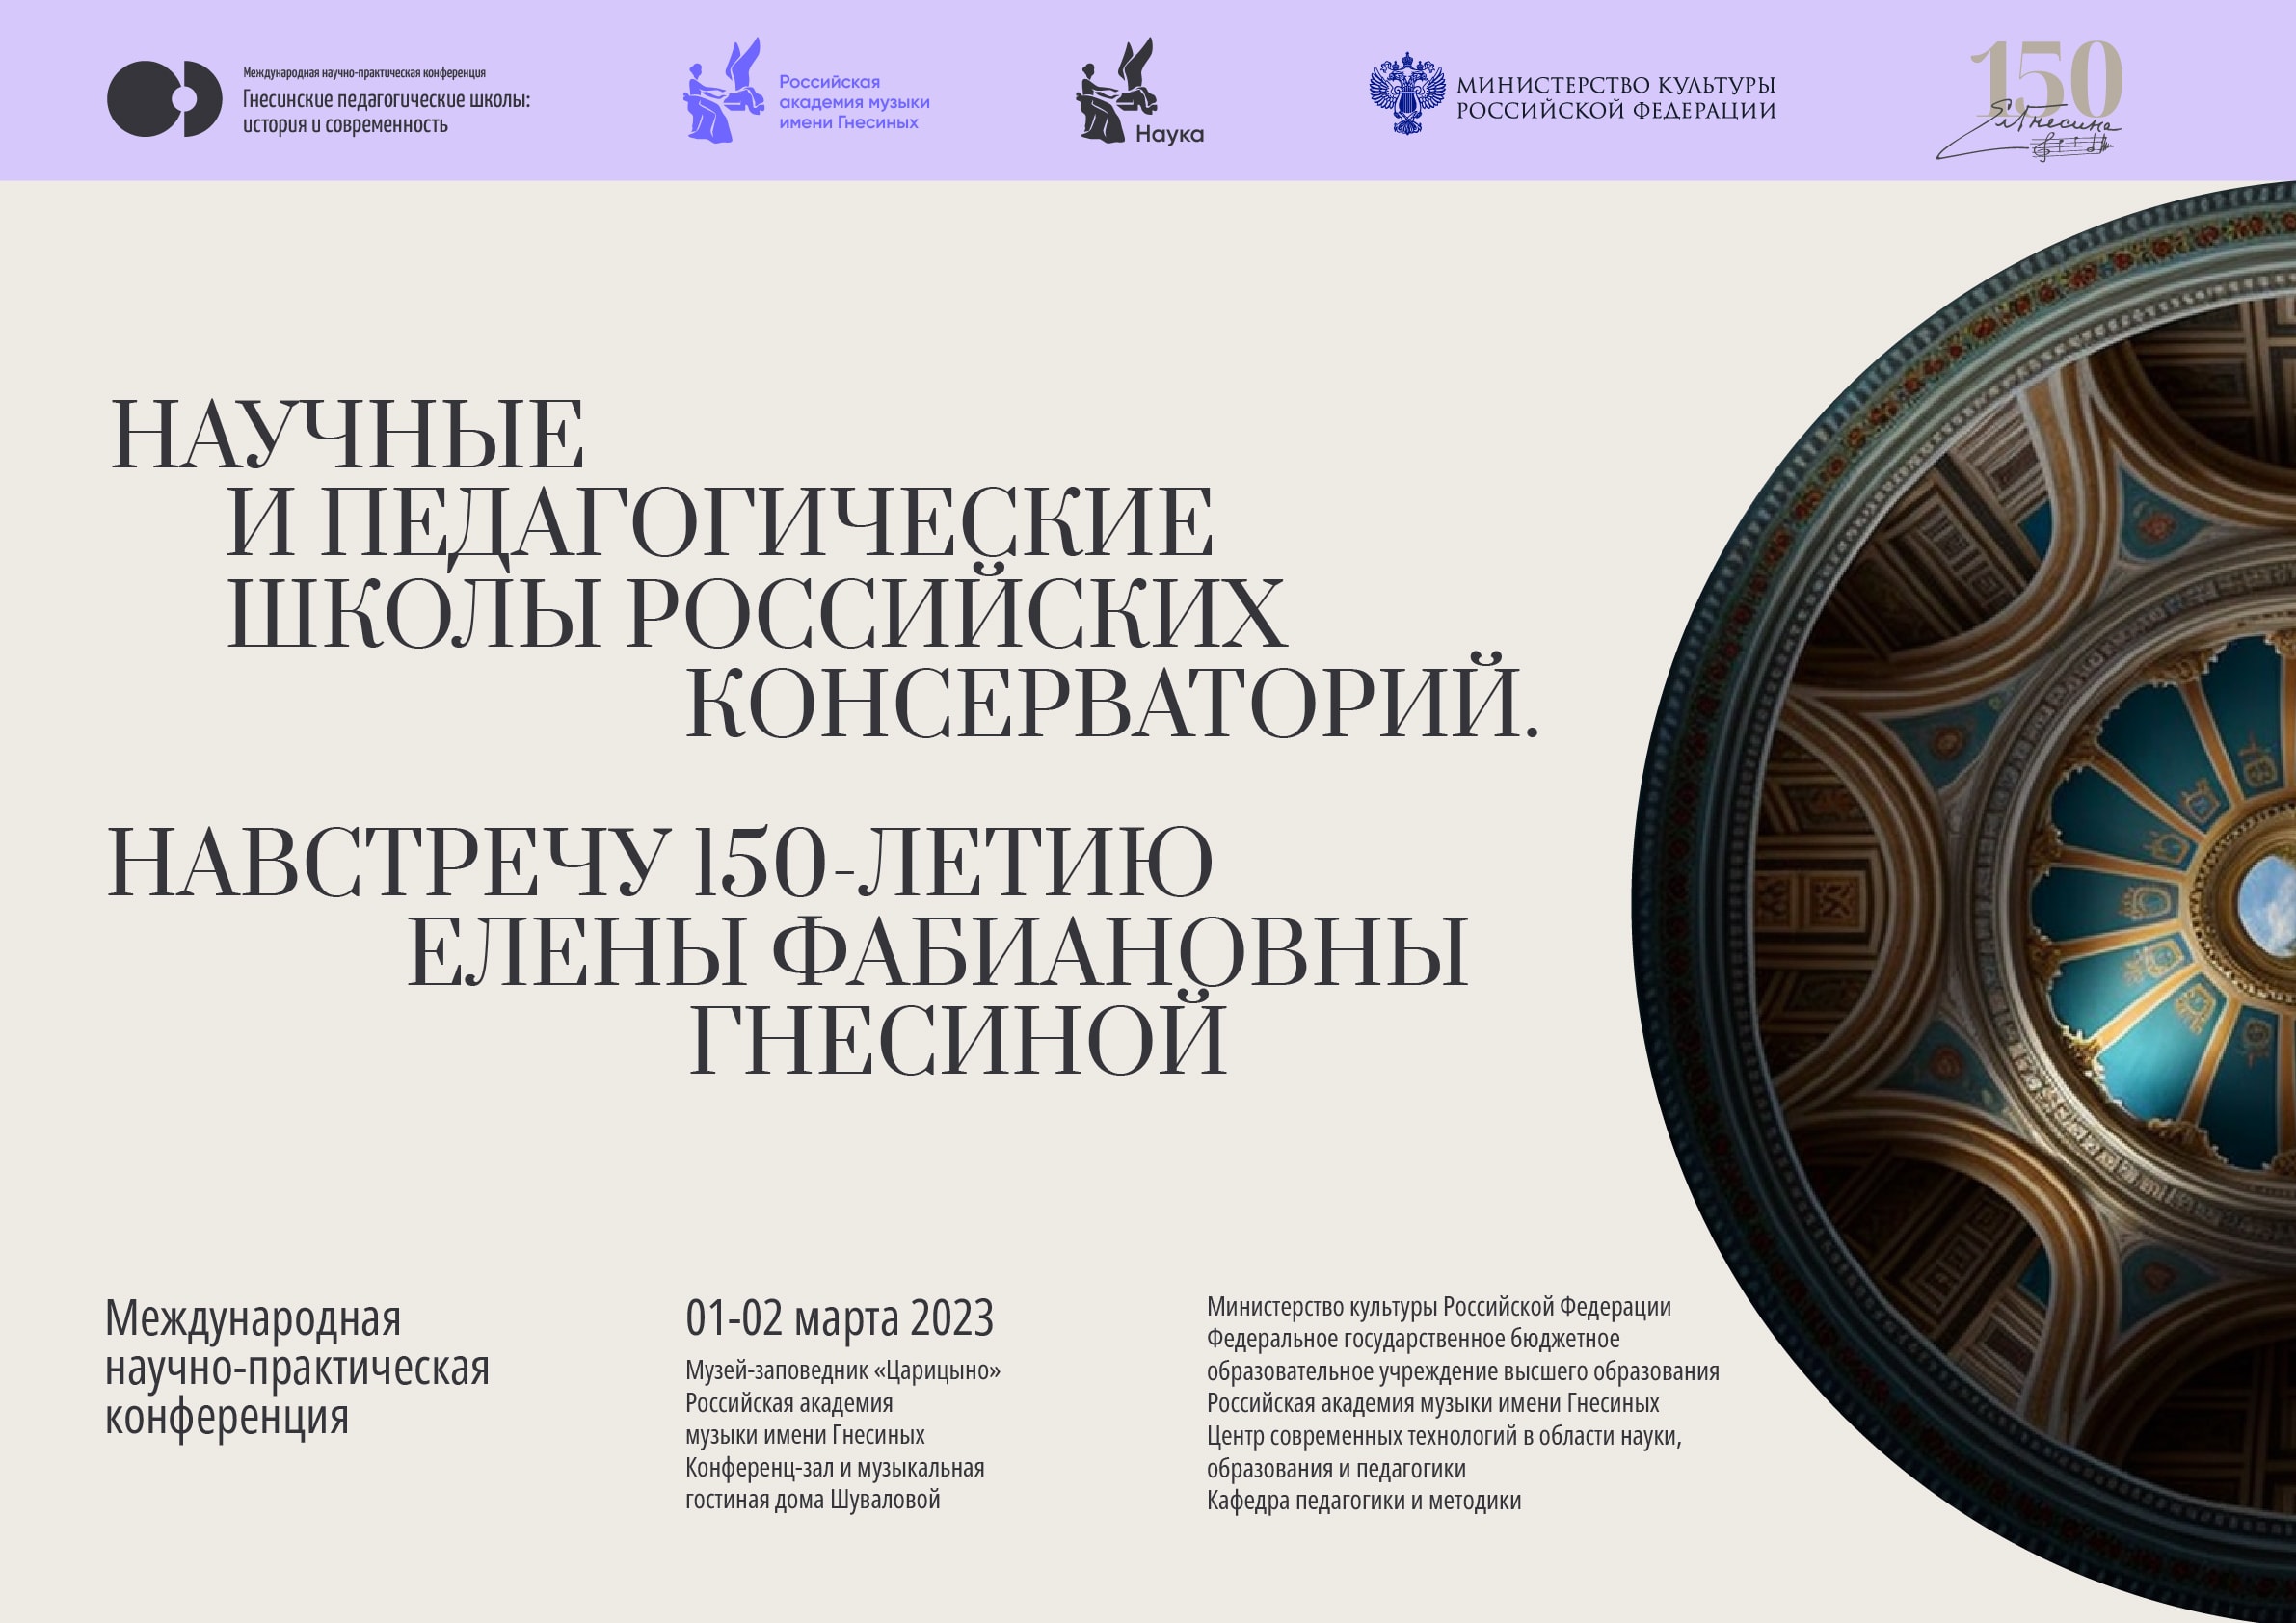 Крупнейшая конференция, посвященная музыкальной педагогике, откроется в Москве